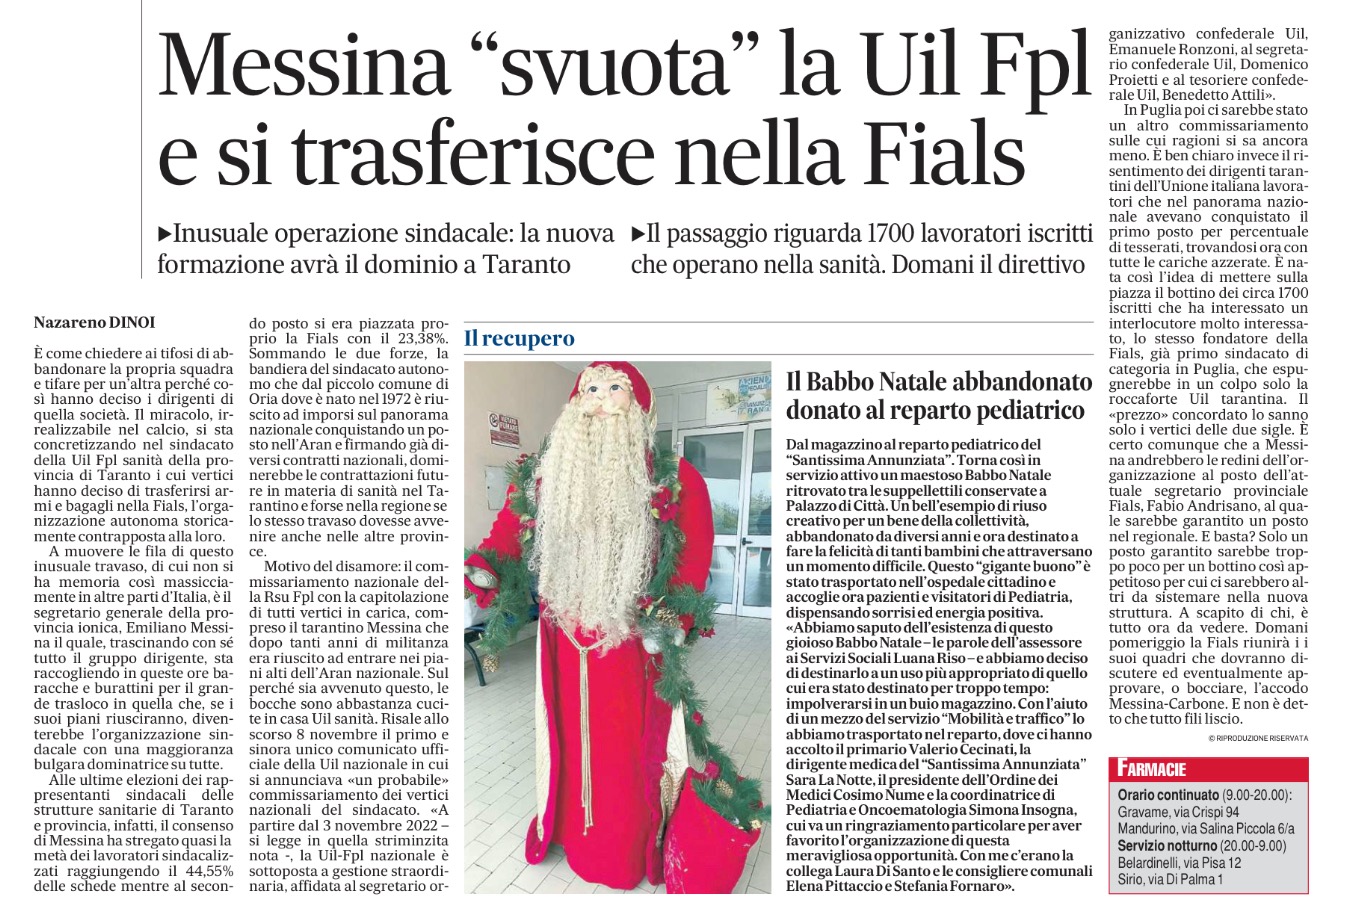 Articolo apparso su Il Quotidiano di Puglia.